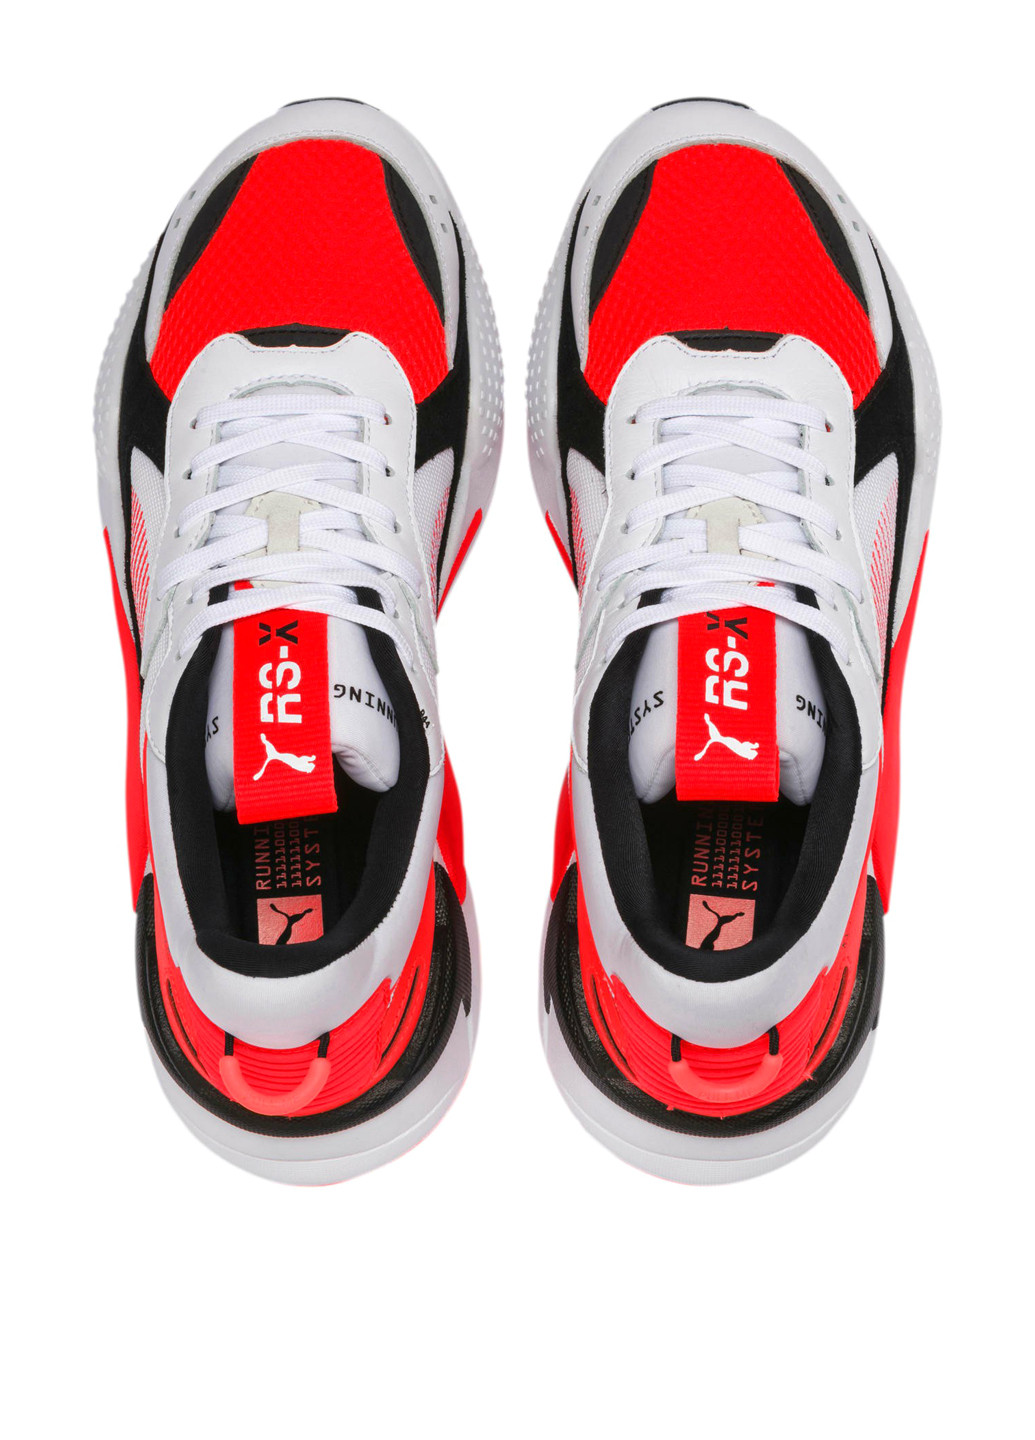 Красные всесезонные кроссовки Puma RS-X Reinvention